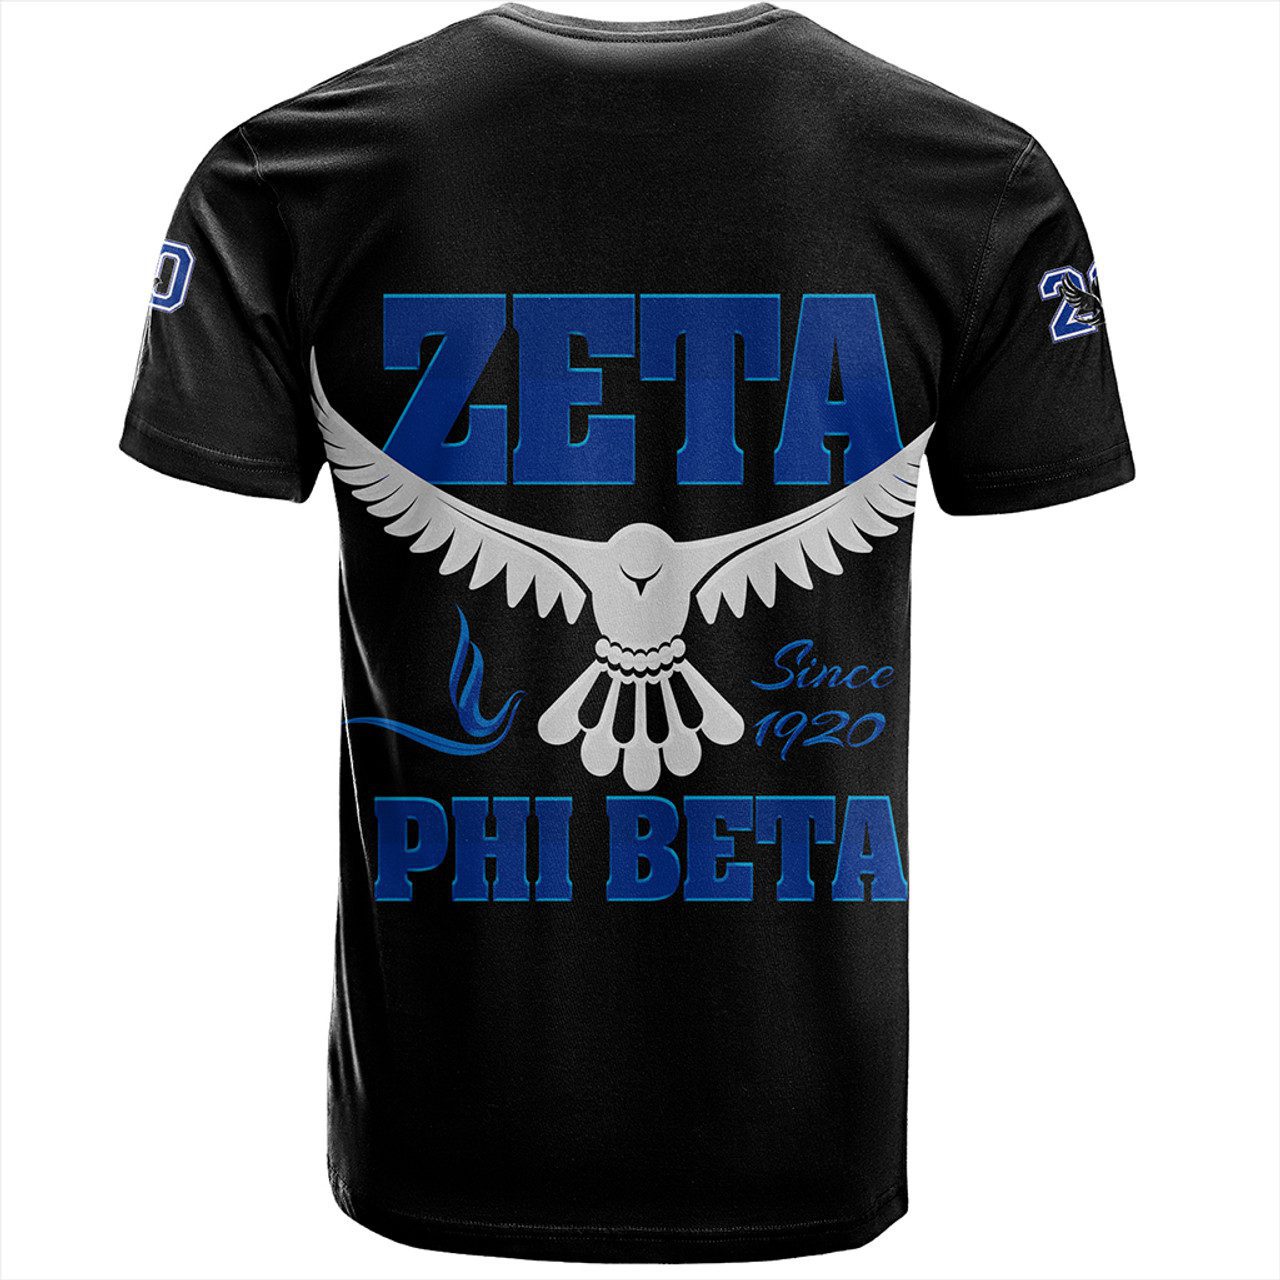 Zeta Phi Beta T-Shirt Letters